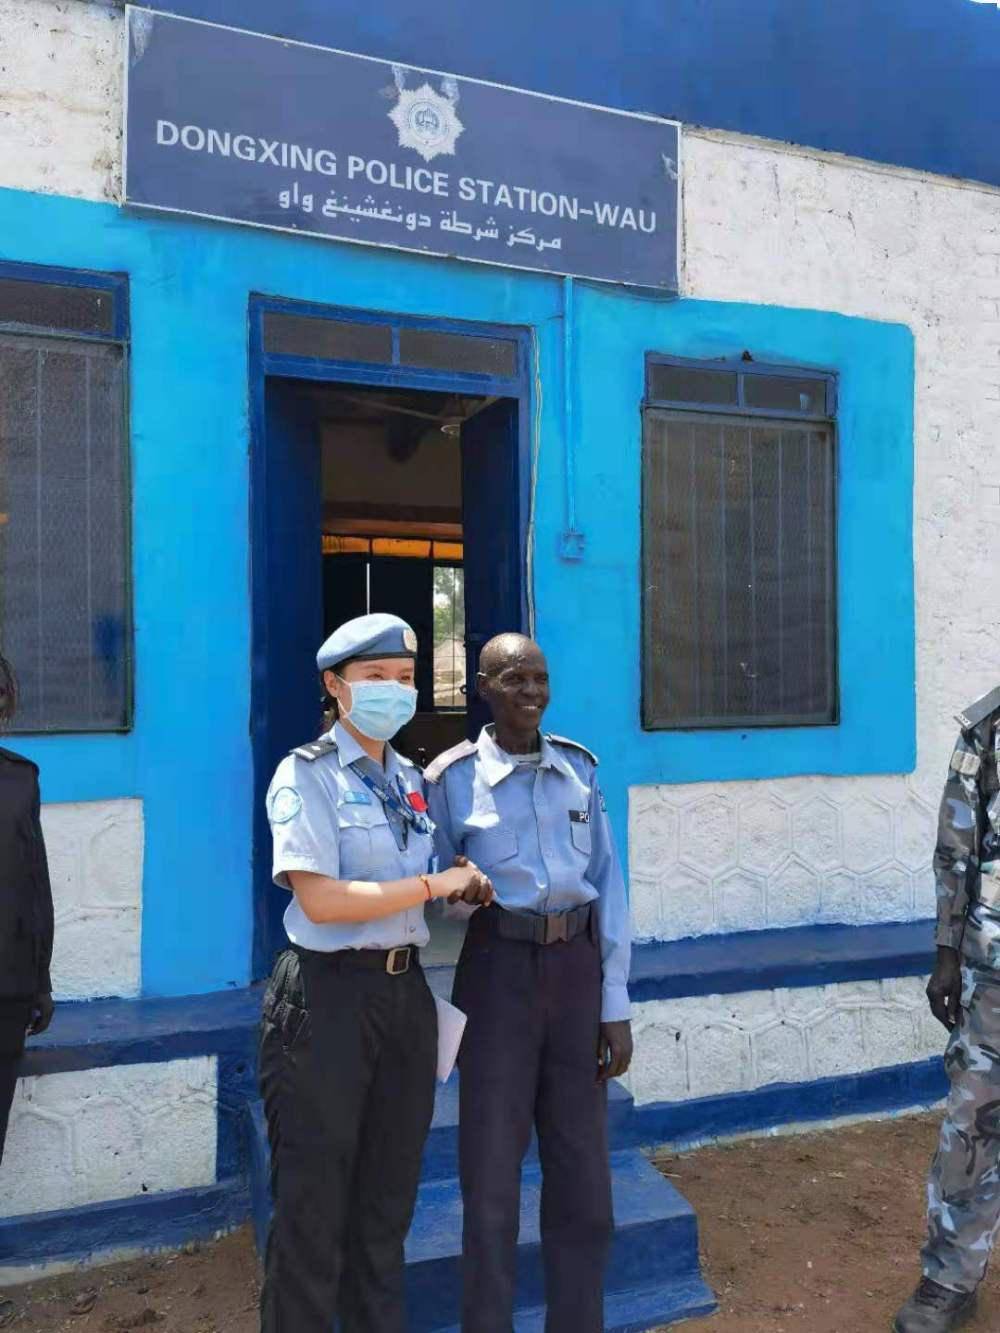 中国维和警察同南苏丹警察在修葺一新的东兴派出所前留影